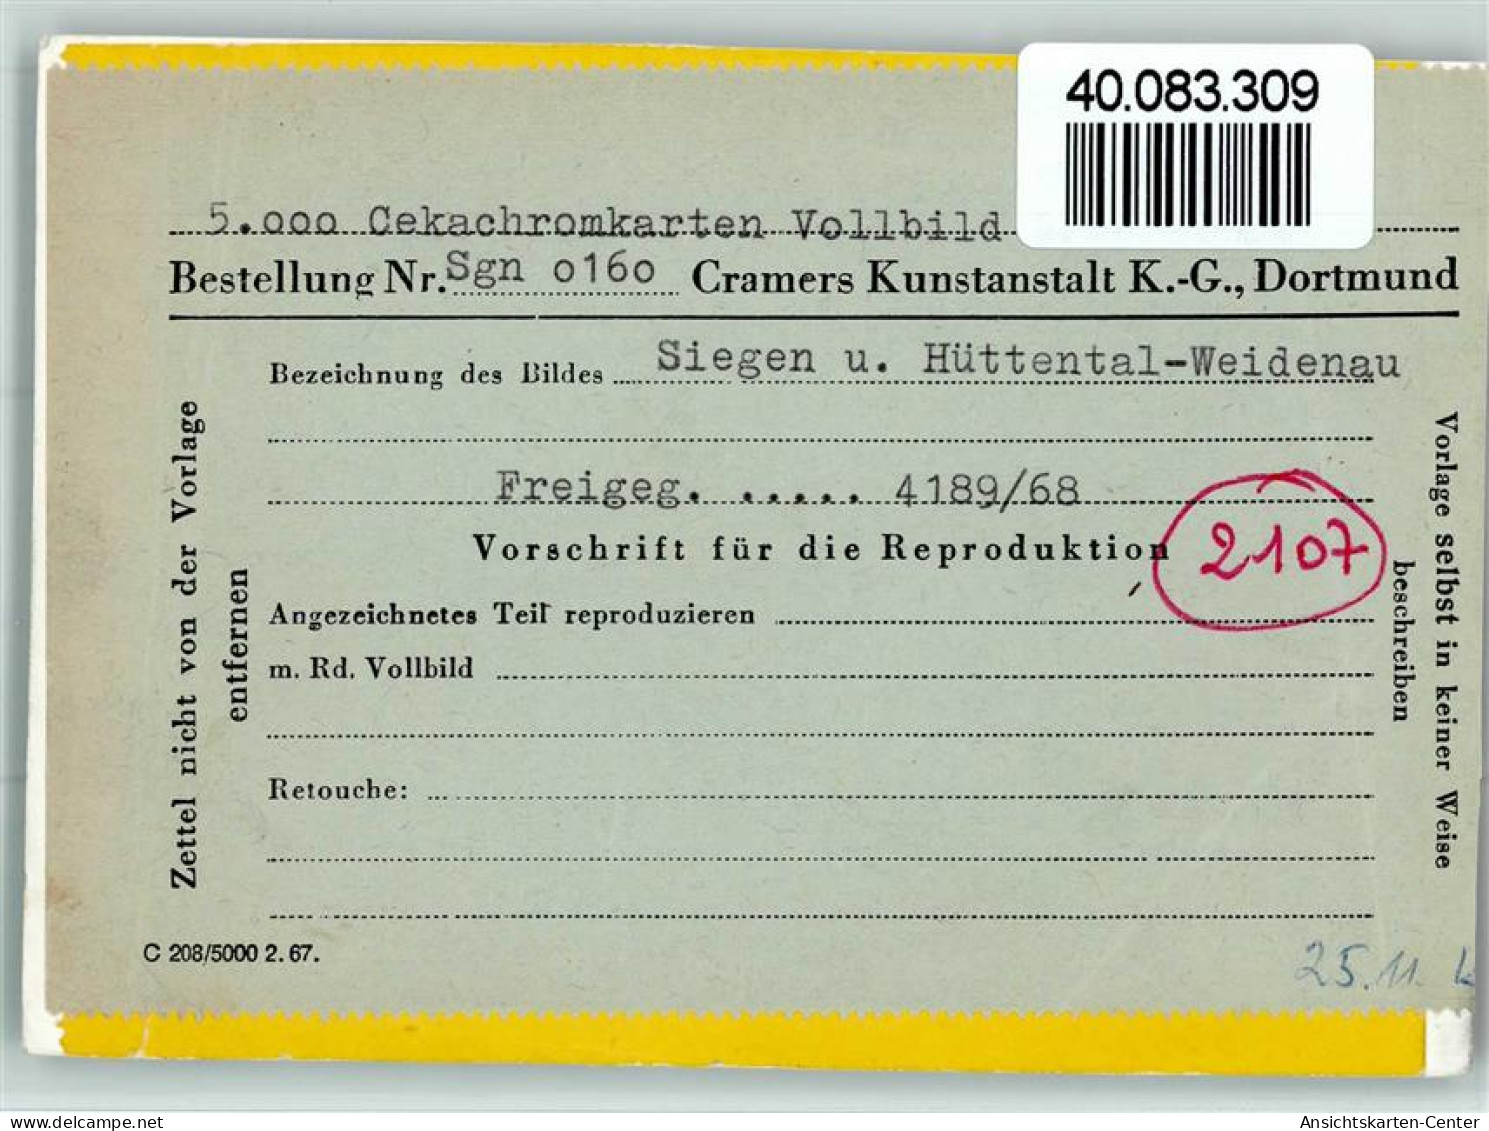 40083309 - Siegen - Siegen